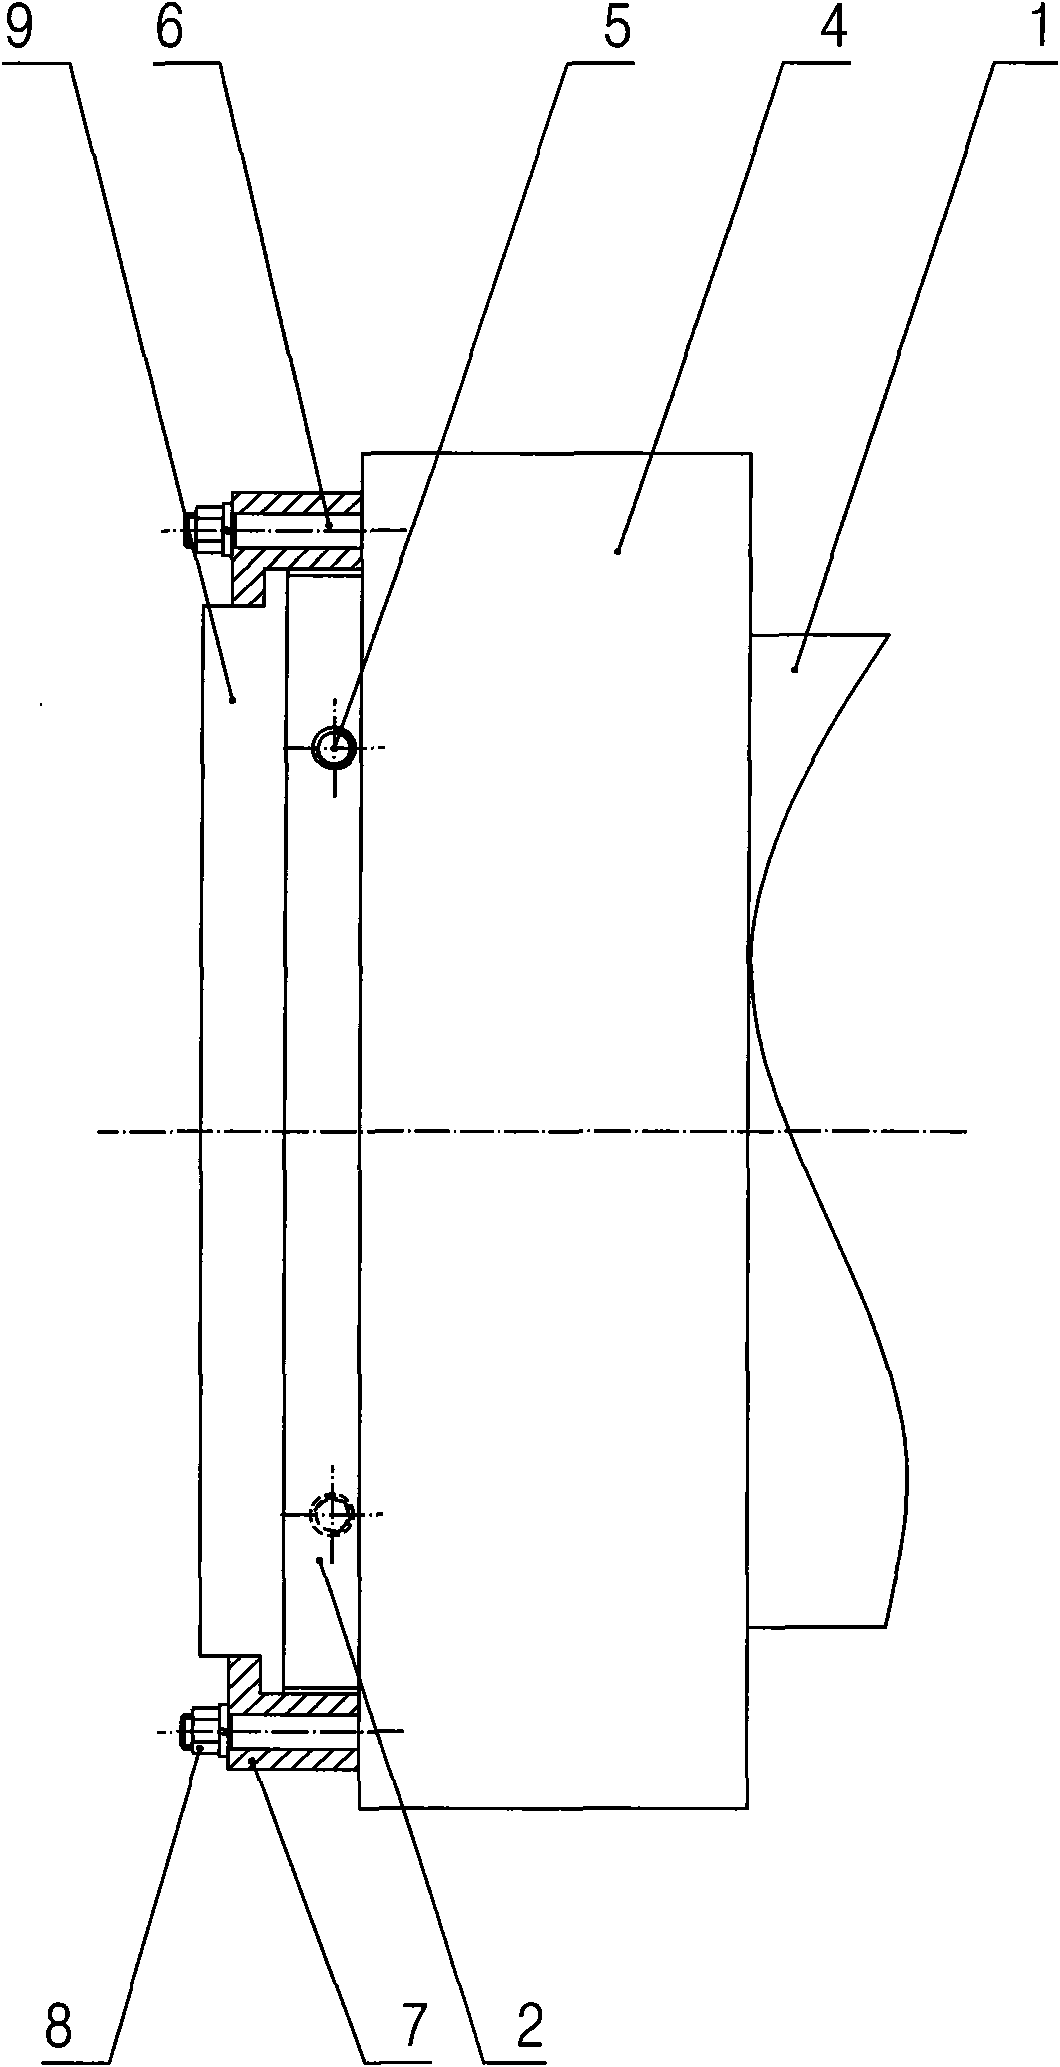 Sealing structure of vertical lift quick opening door